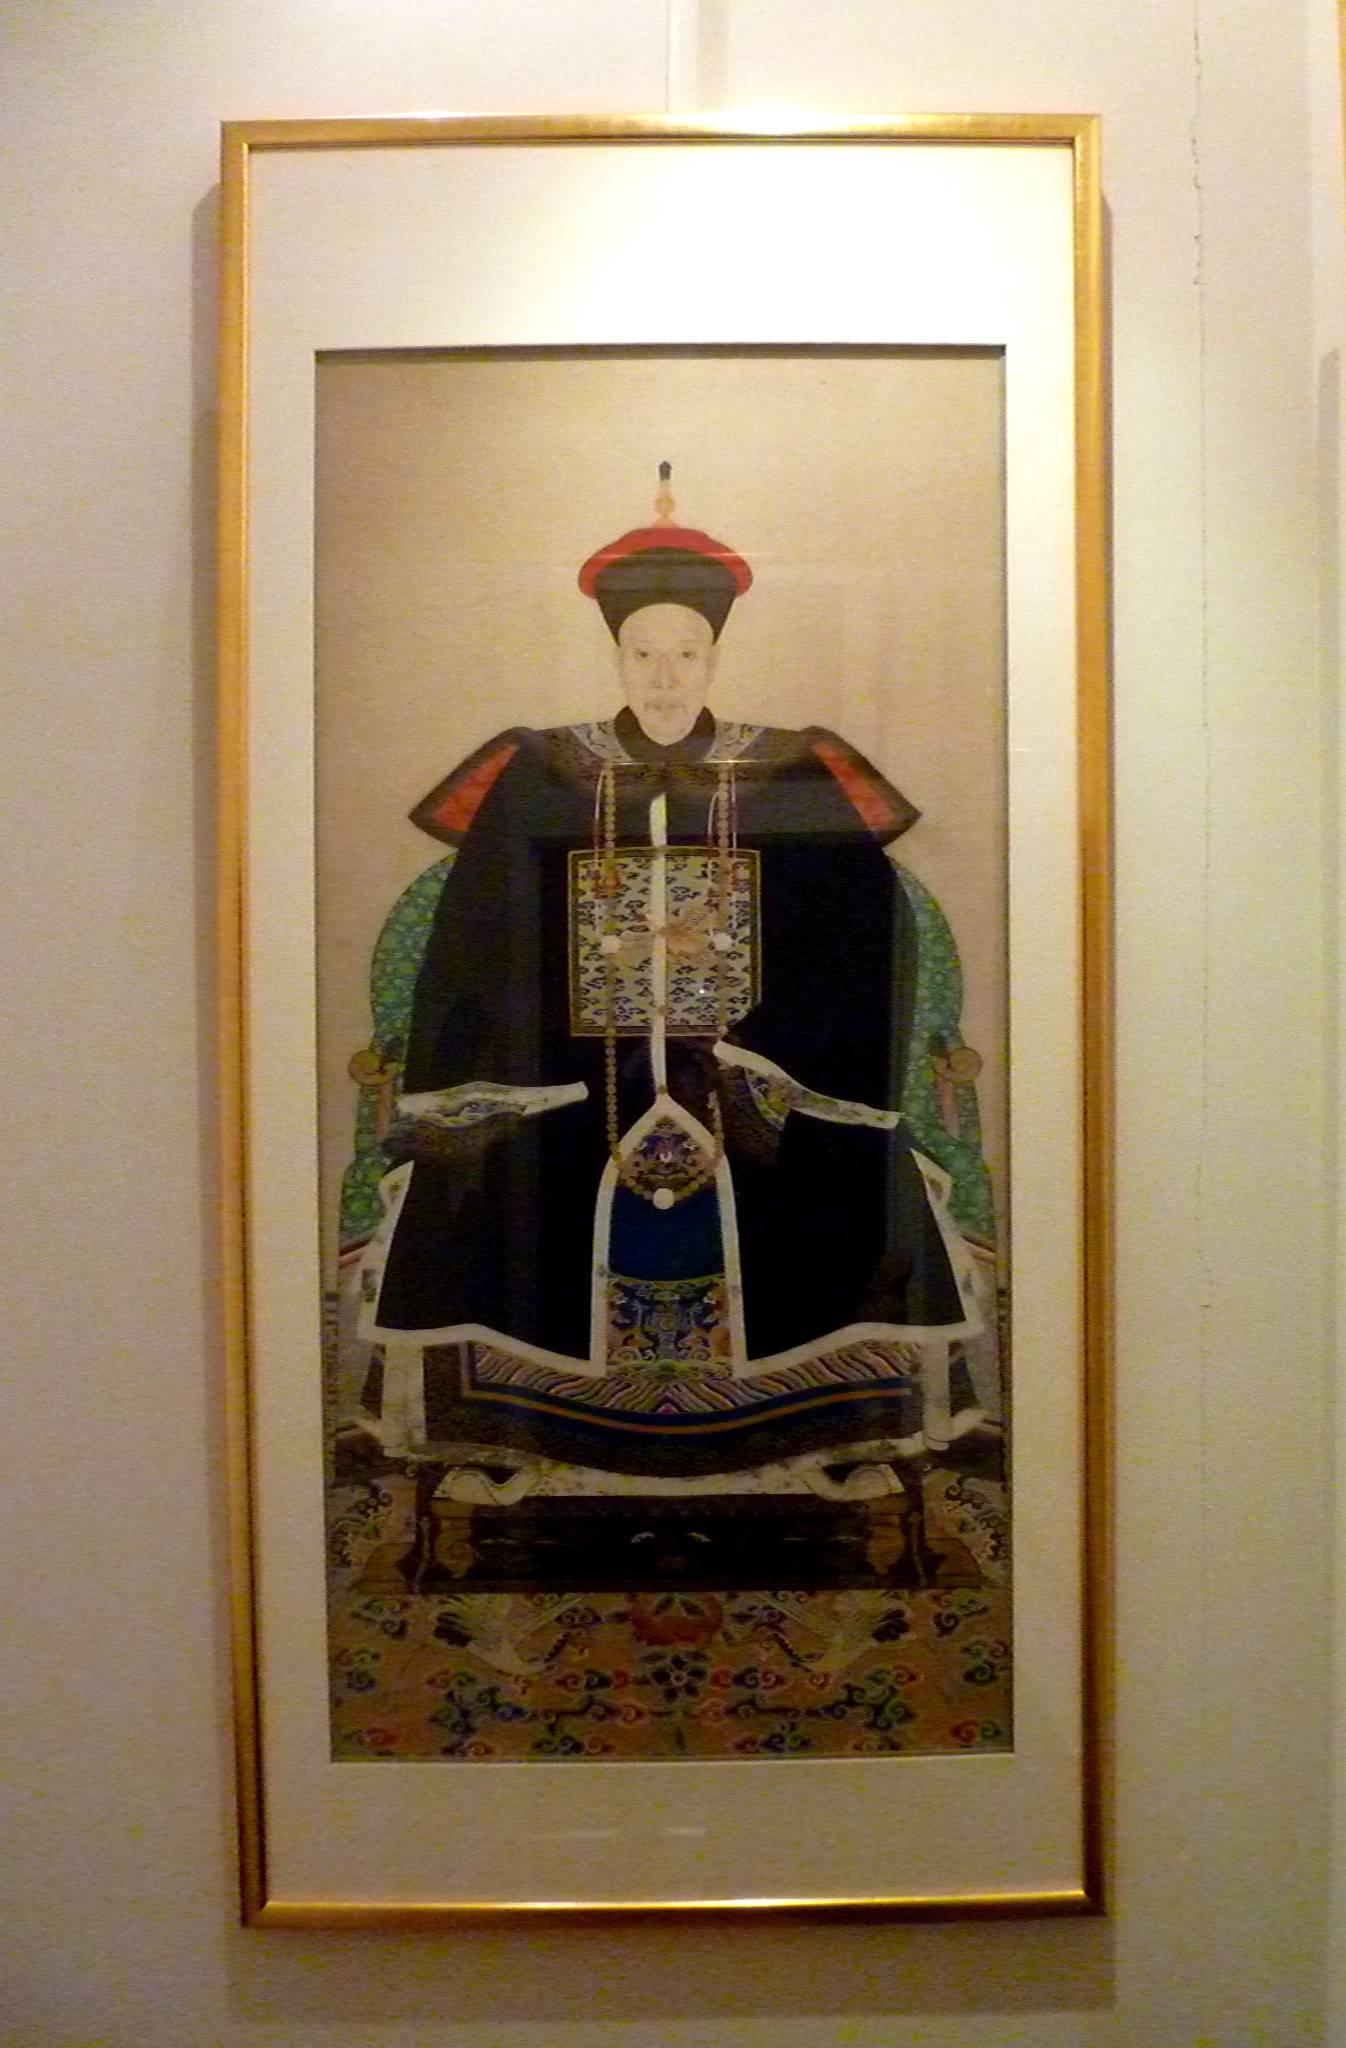 Feines Porträt eines kaiserlichen Beamten im 4. Rang, elegante Farben und raffinierte Details, Tusche und Farbe auf Seide, 19. Jahrhundert, konservatorisch gerahmt.